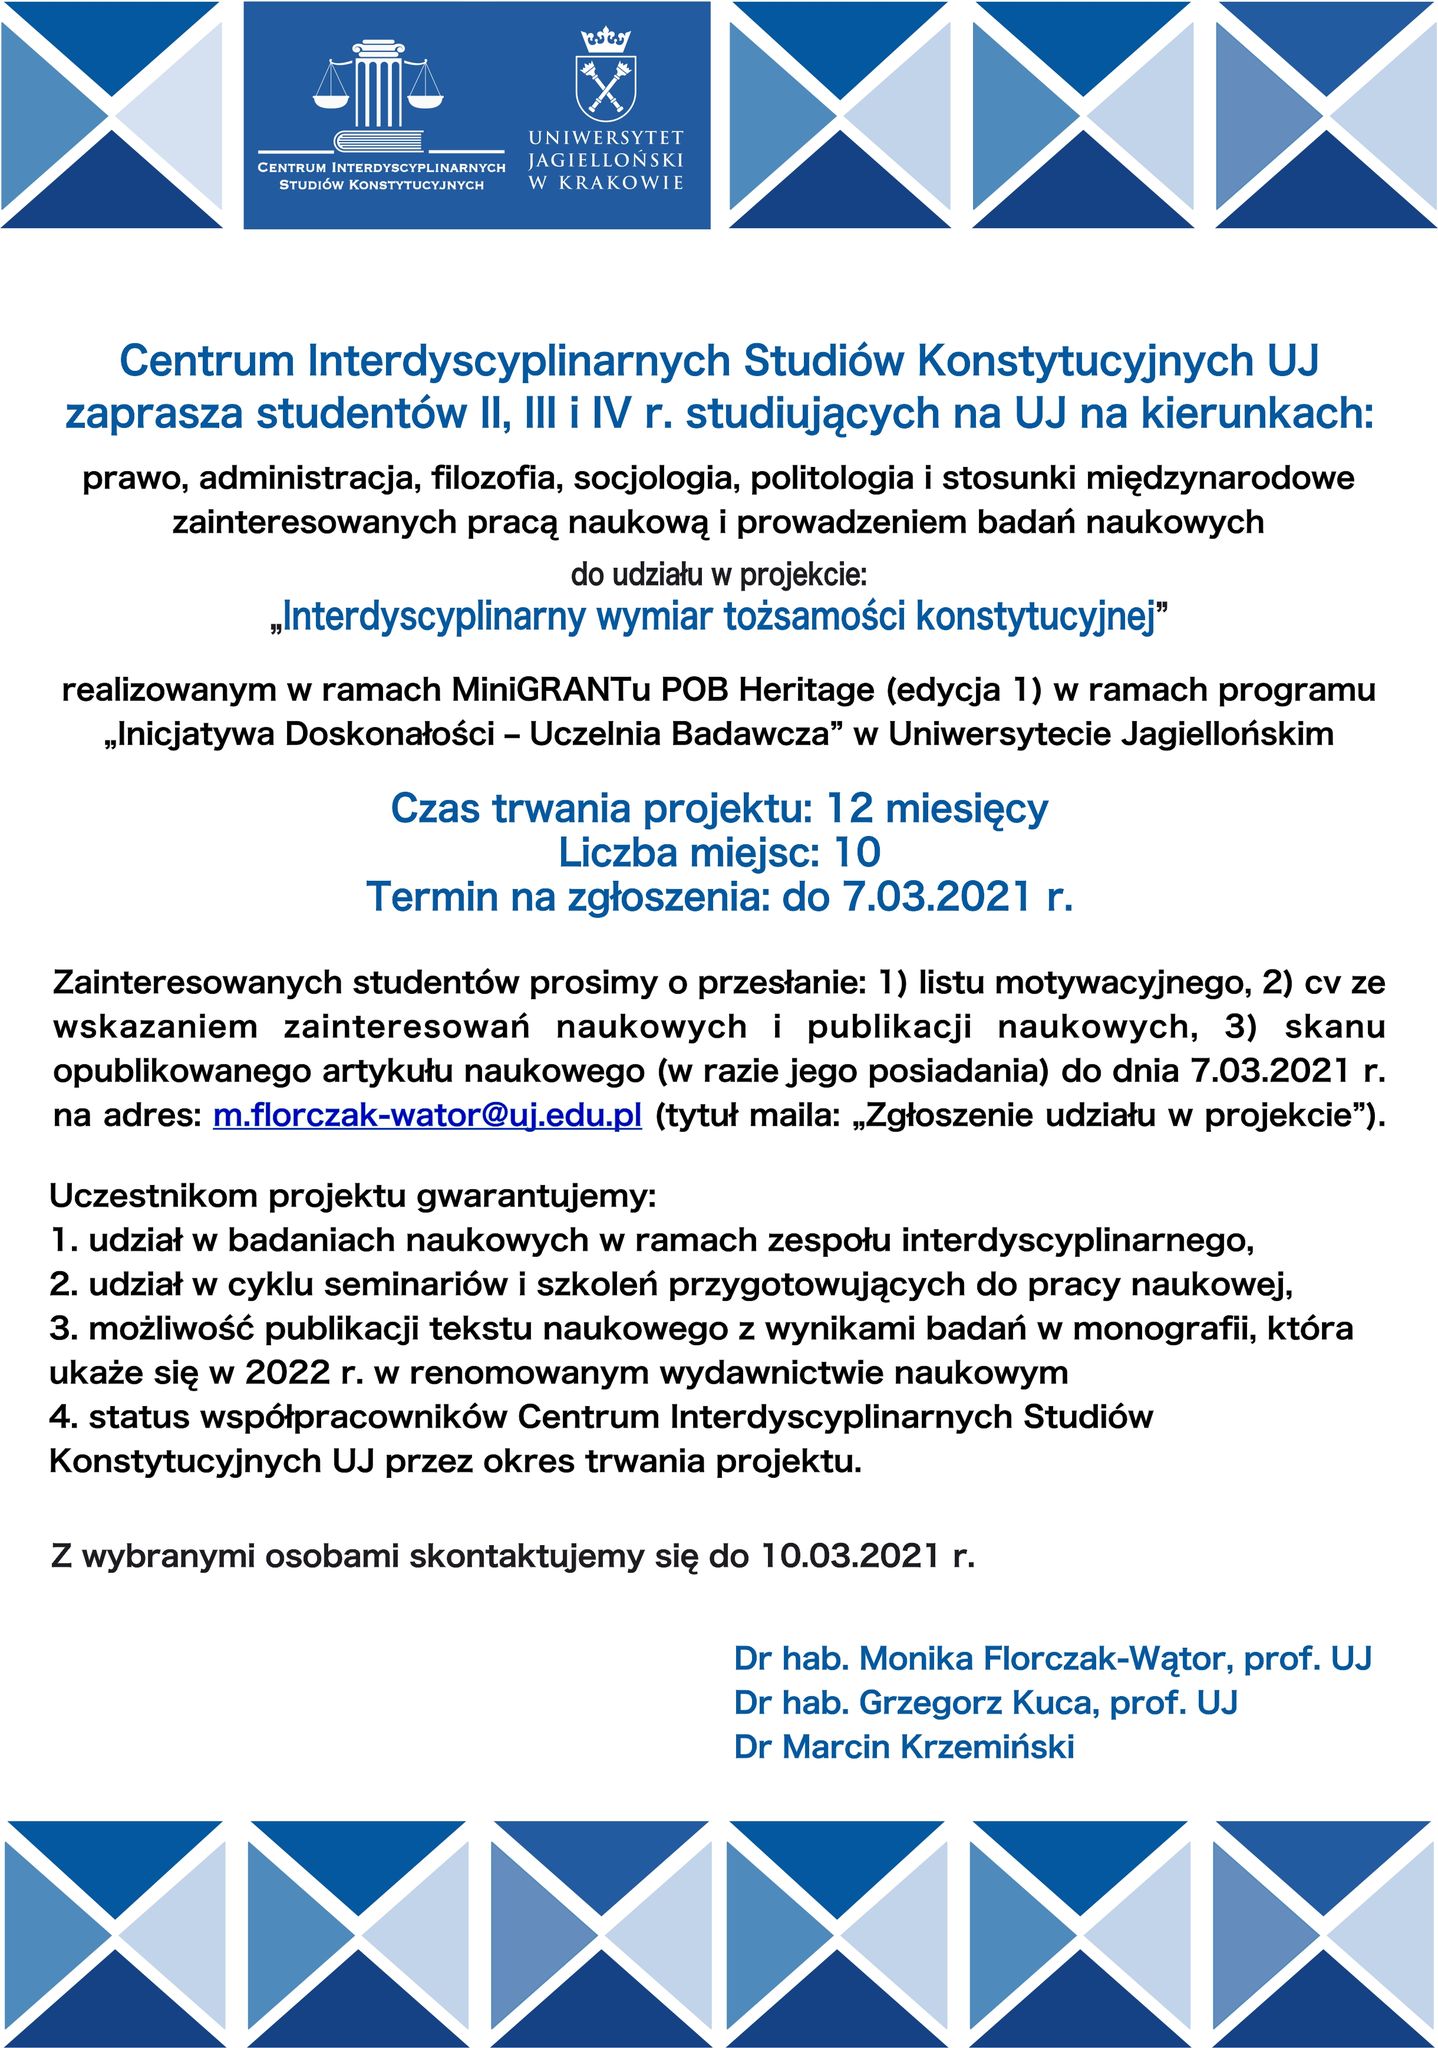 Grafika reklamująca nabór do projektu "Interdyscyplinarny wymiar tożsamości konstytucyjnej" Centrum Interdyscyplinarnych Studiów Konstytucyjnych UJ, powielająca treść opublikowanego ogłoszenia.